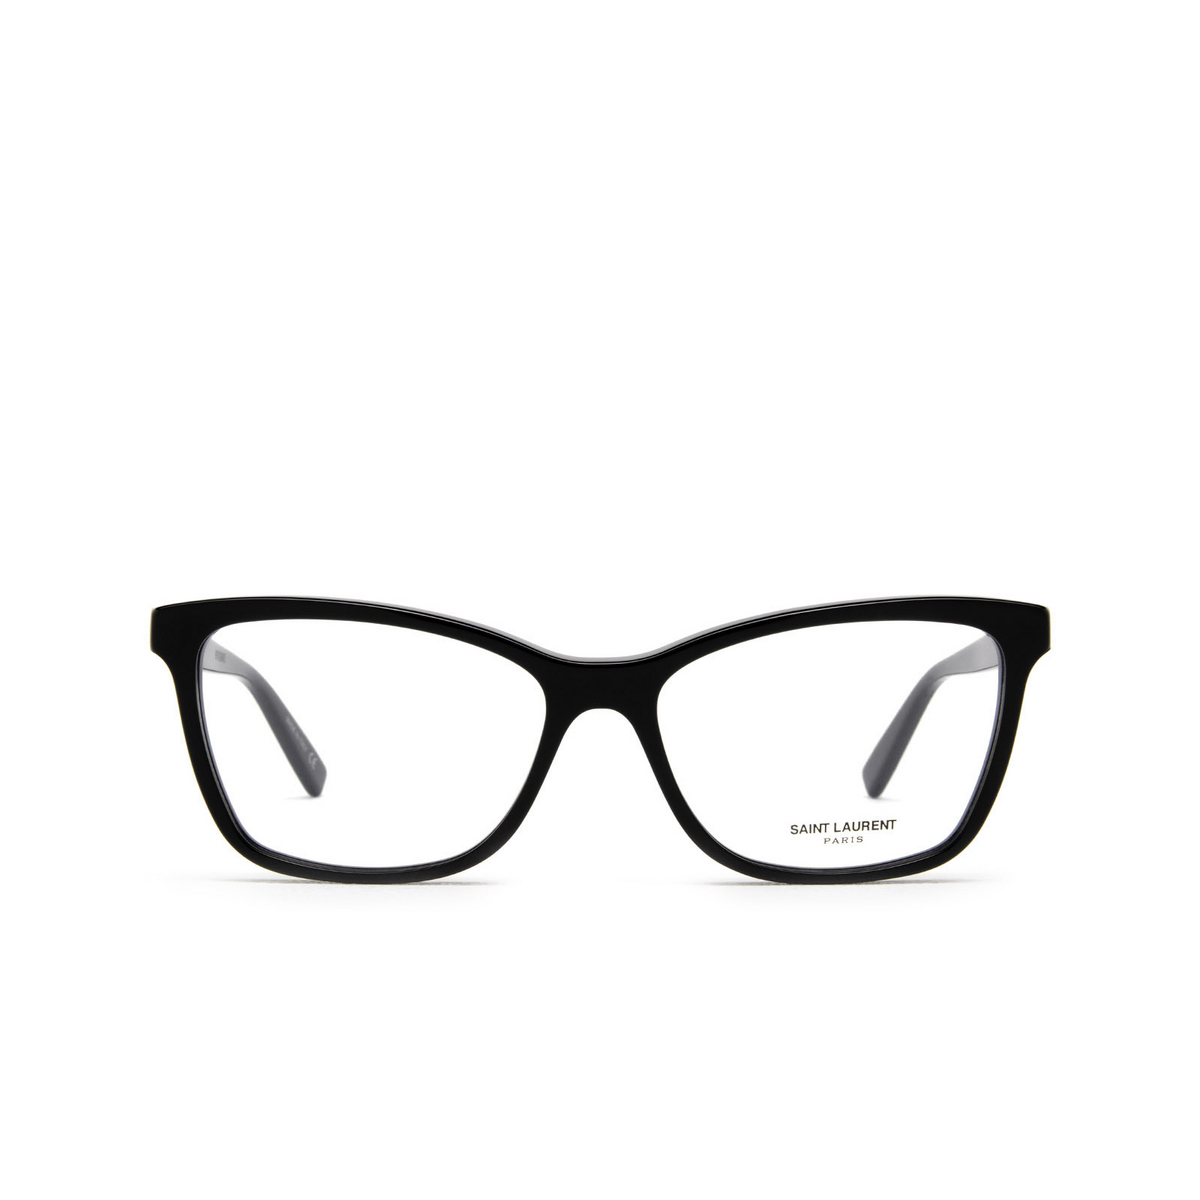 Saint Laurent® Cat-eye Eyeglasses: SL 503 color Black 001 - front view.